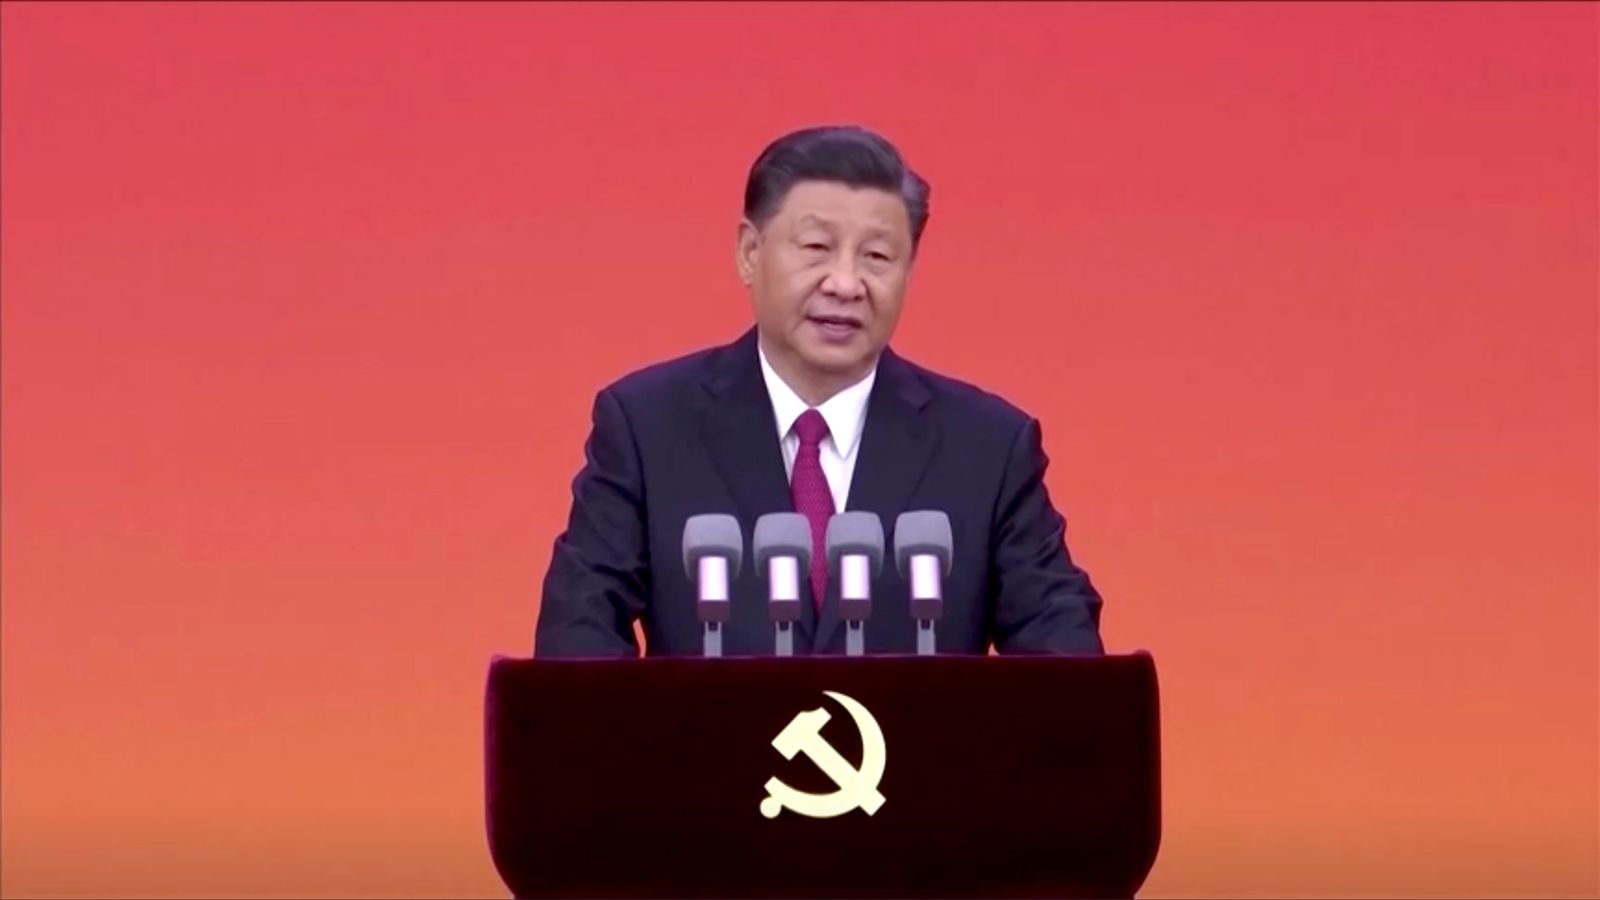 الرئيس الصيني شي جينبينغ خلال توزيع ميداليات لمناسبة الذكرى المئوية لتأسيس الحزب الشيوعي في بكين - 29 يونيو 2021 - REUTERS